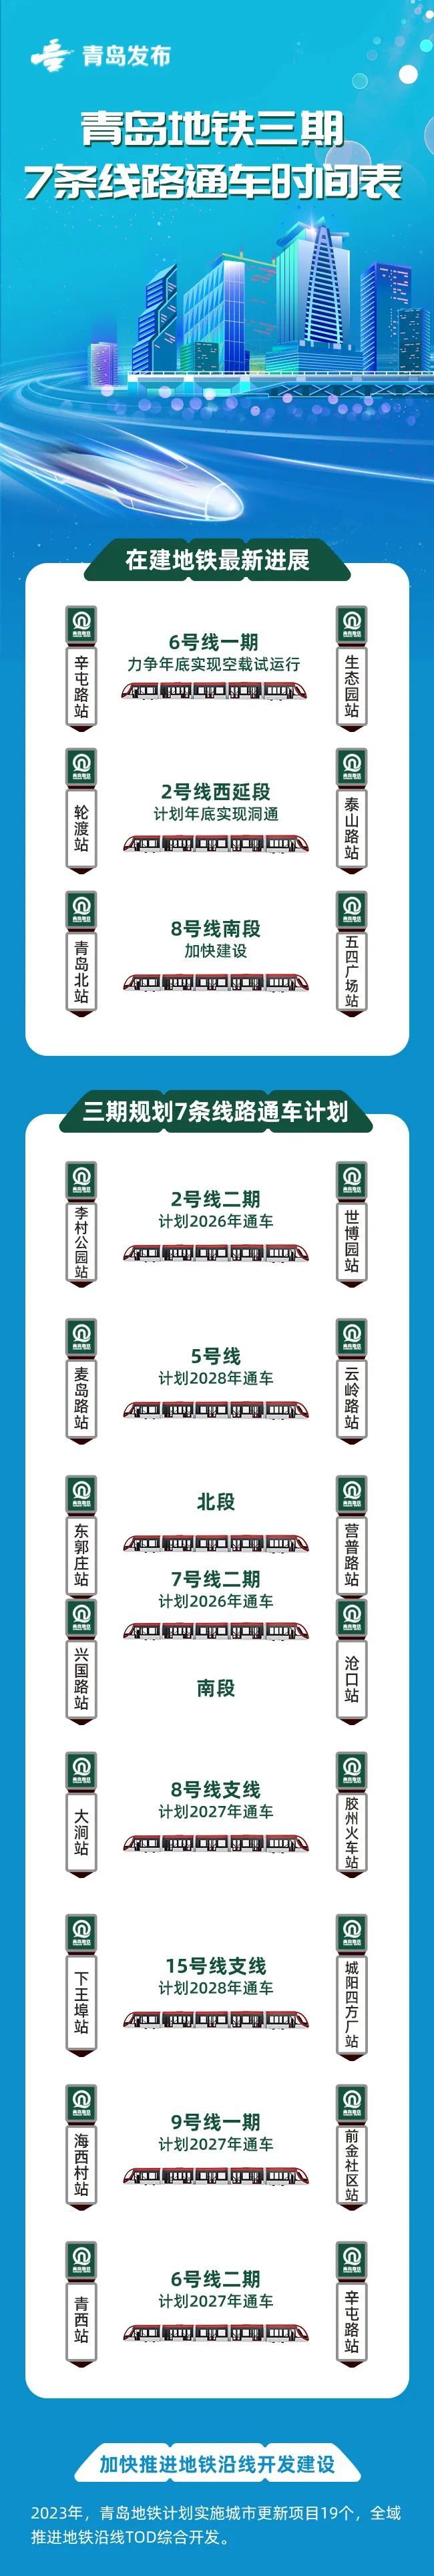 青岛地铁三期规划7条线路通车时间表